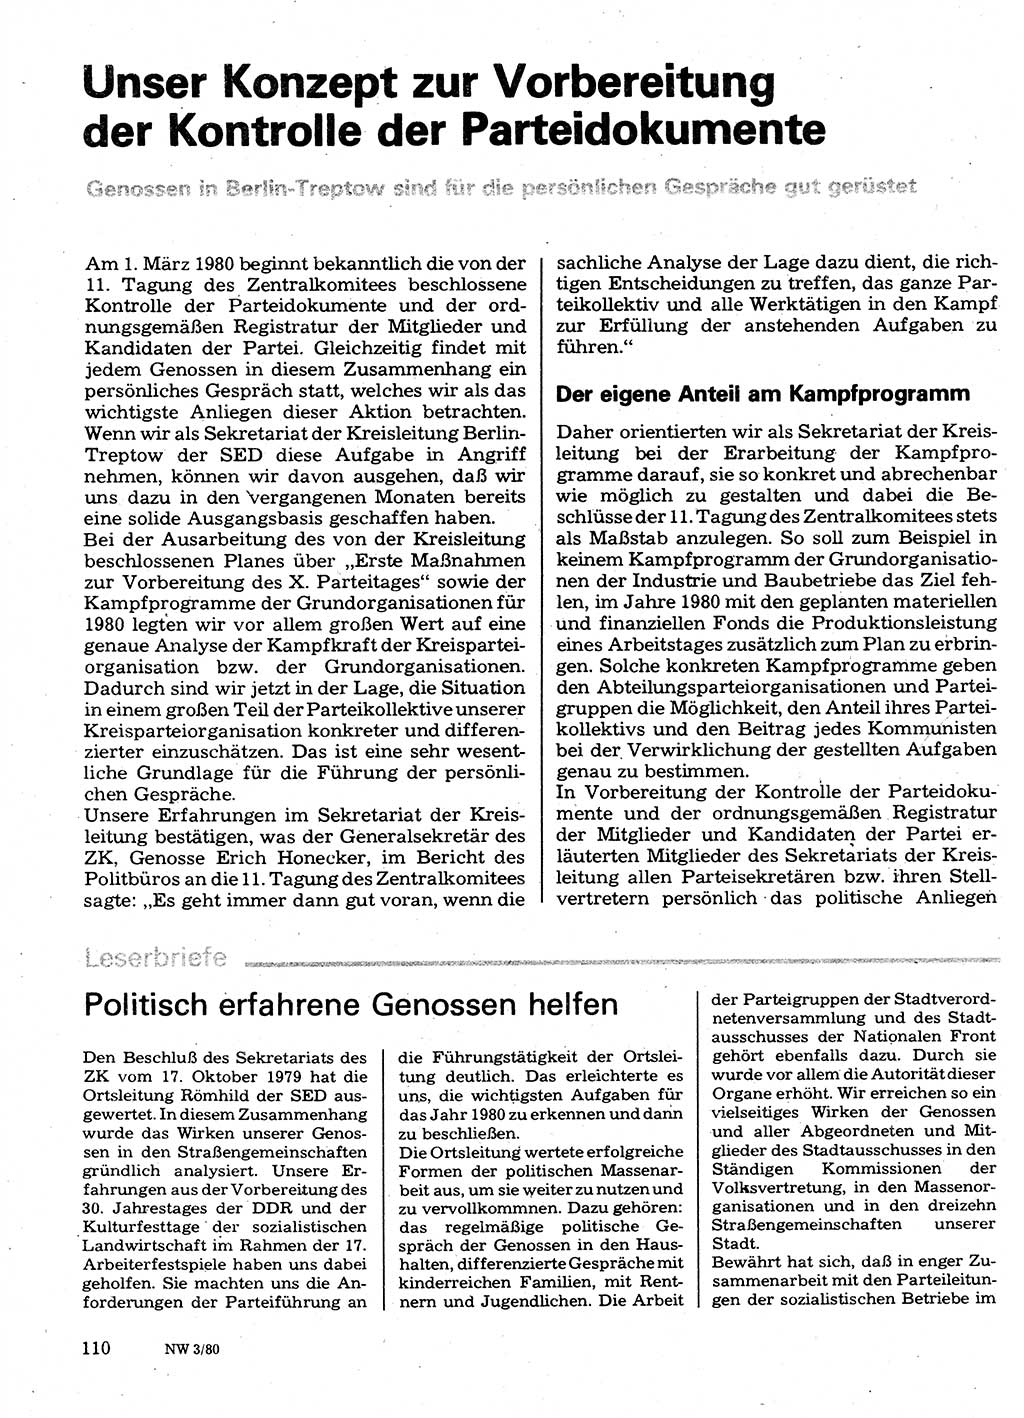 Neuer Weg (NW), Organ des Zentralkomitees (ZK) der SED (Sozialistische Einheitspartei Deutschlands) für Fragen des Parteilebens, 35. Jahrgang [Deutsche Demokratische Republik (DDR)] 1980, Seite 110 (NW ZK SED DDR 1980, S. 110)